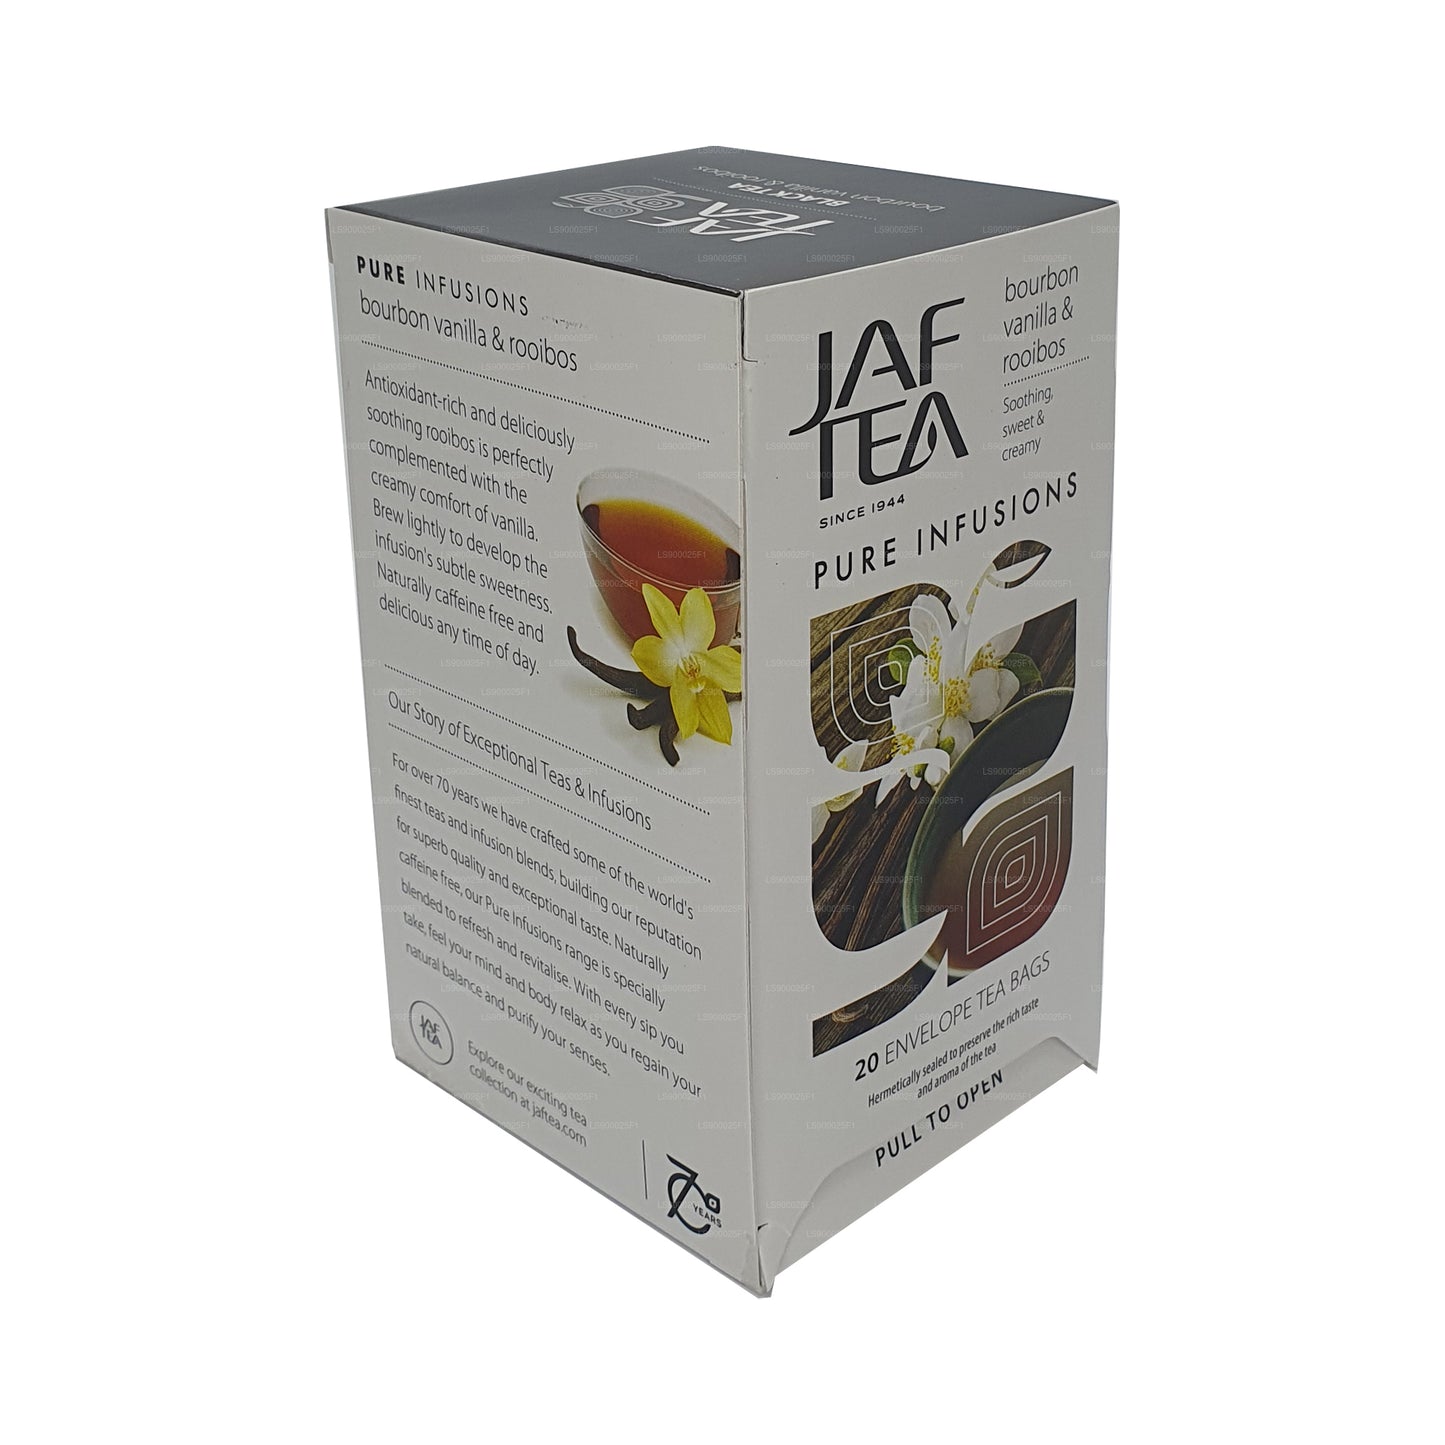 مجموعة الشاي النقي من جاف تي بوربون فانيلا رويبوس (30 جم) 20 كيس شاي